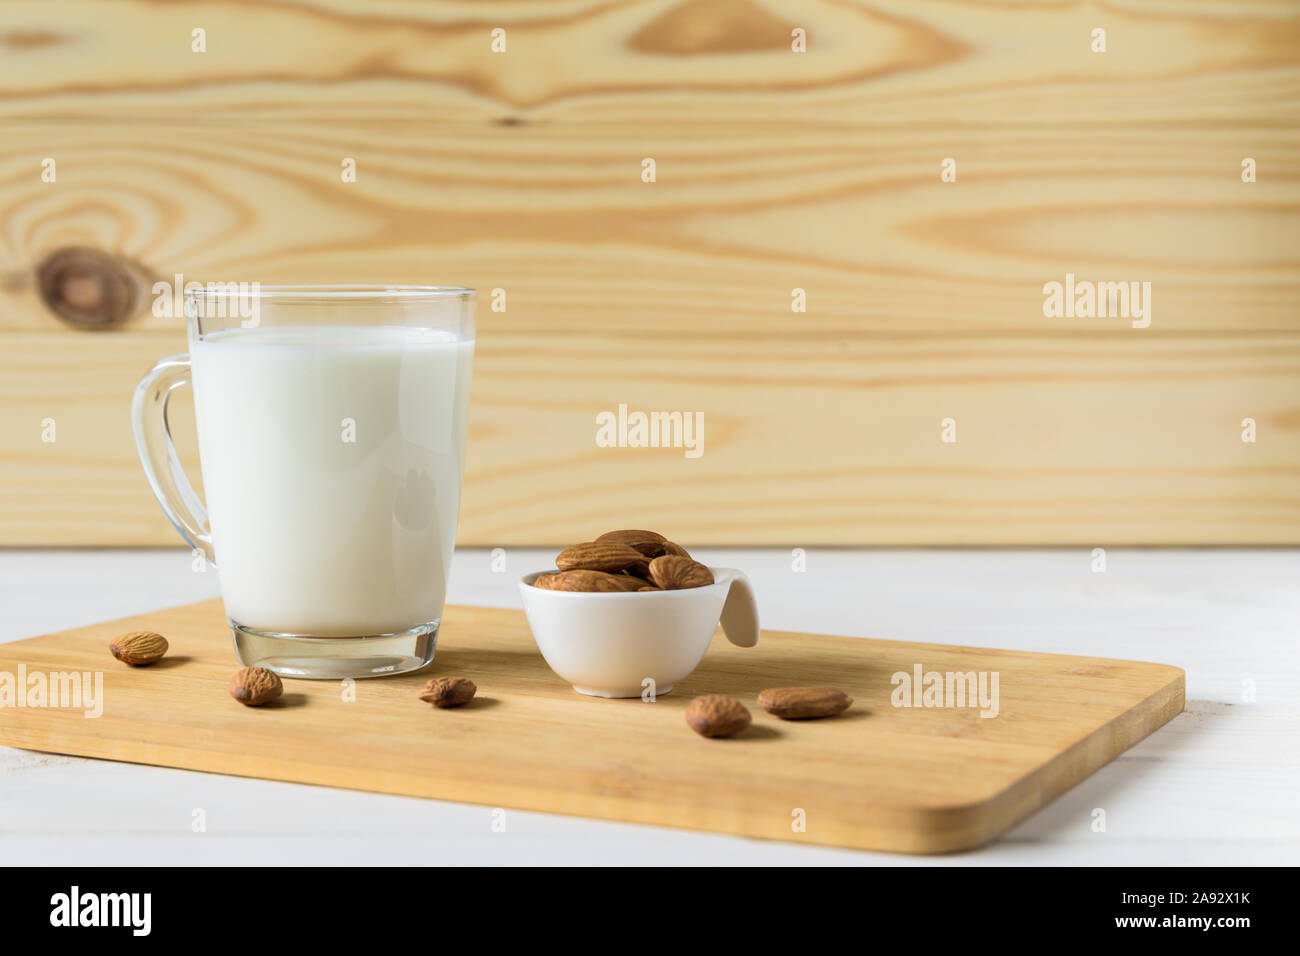 Mandeln und Glas mit Mandelmilch auf hölzernen Hintergrund Stockfoto